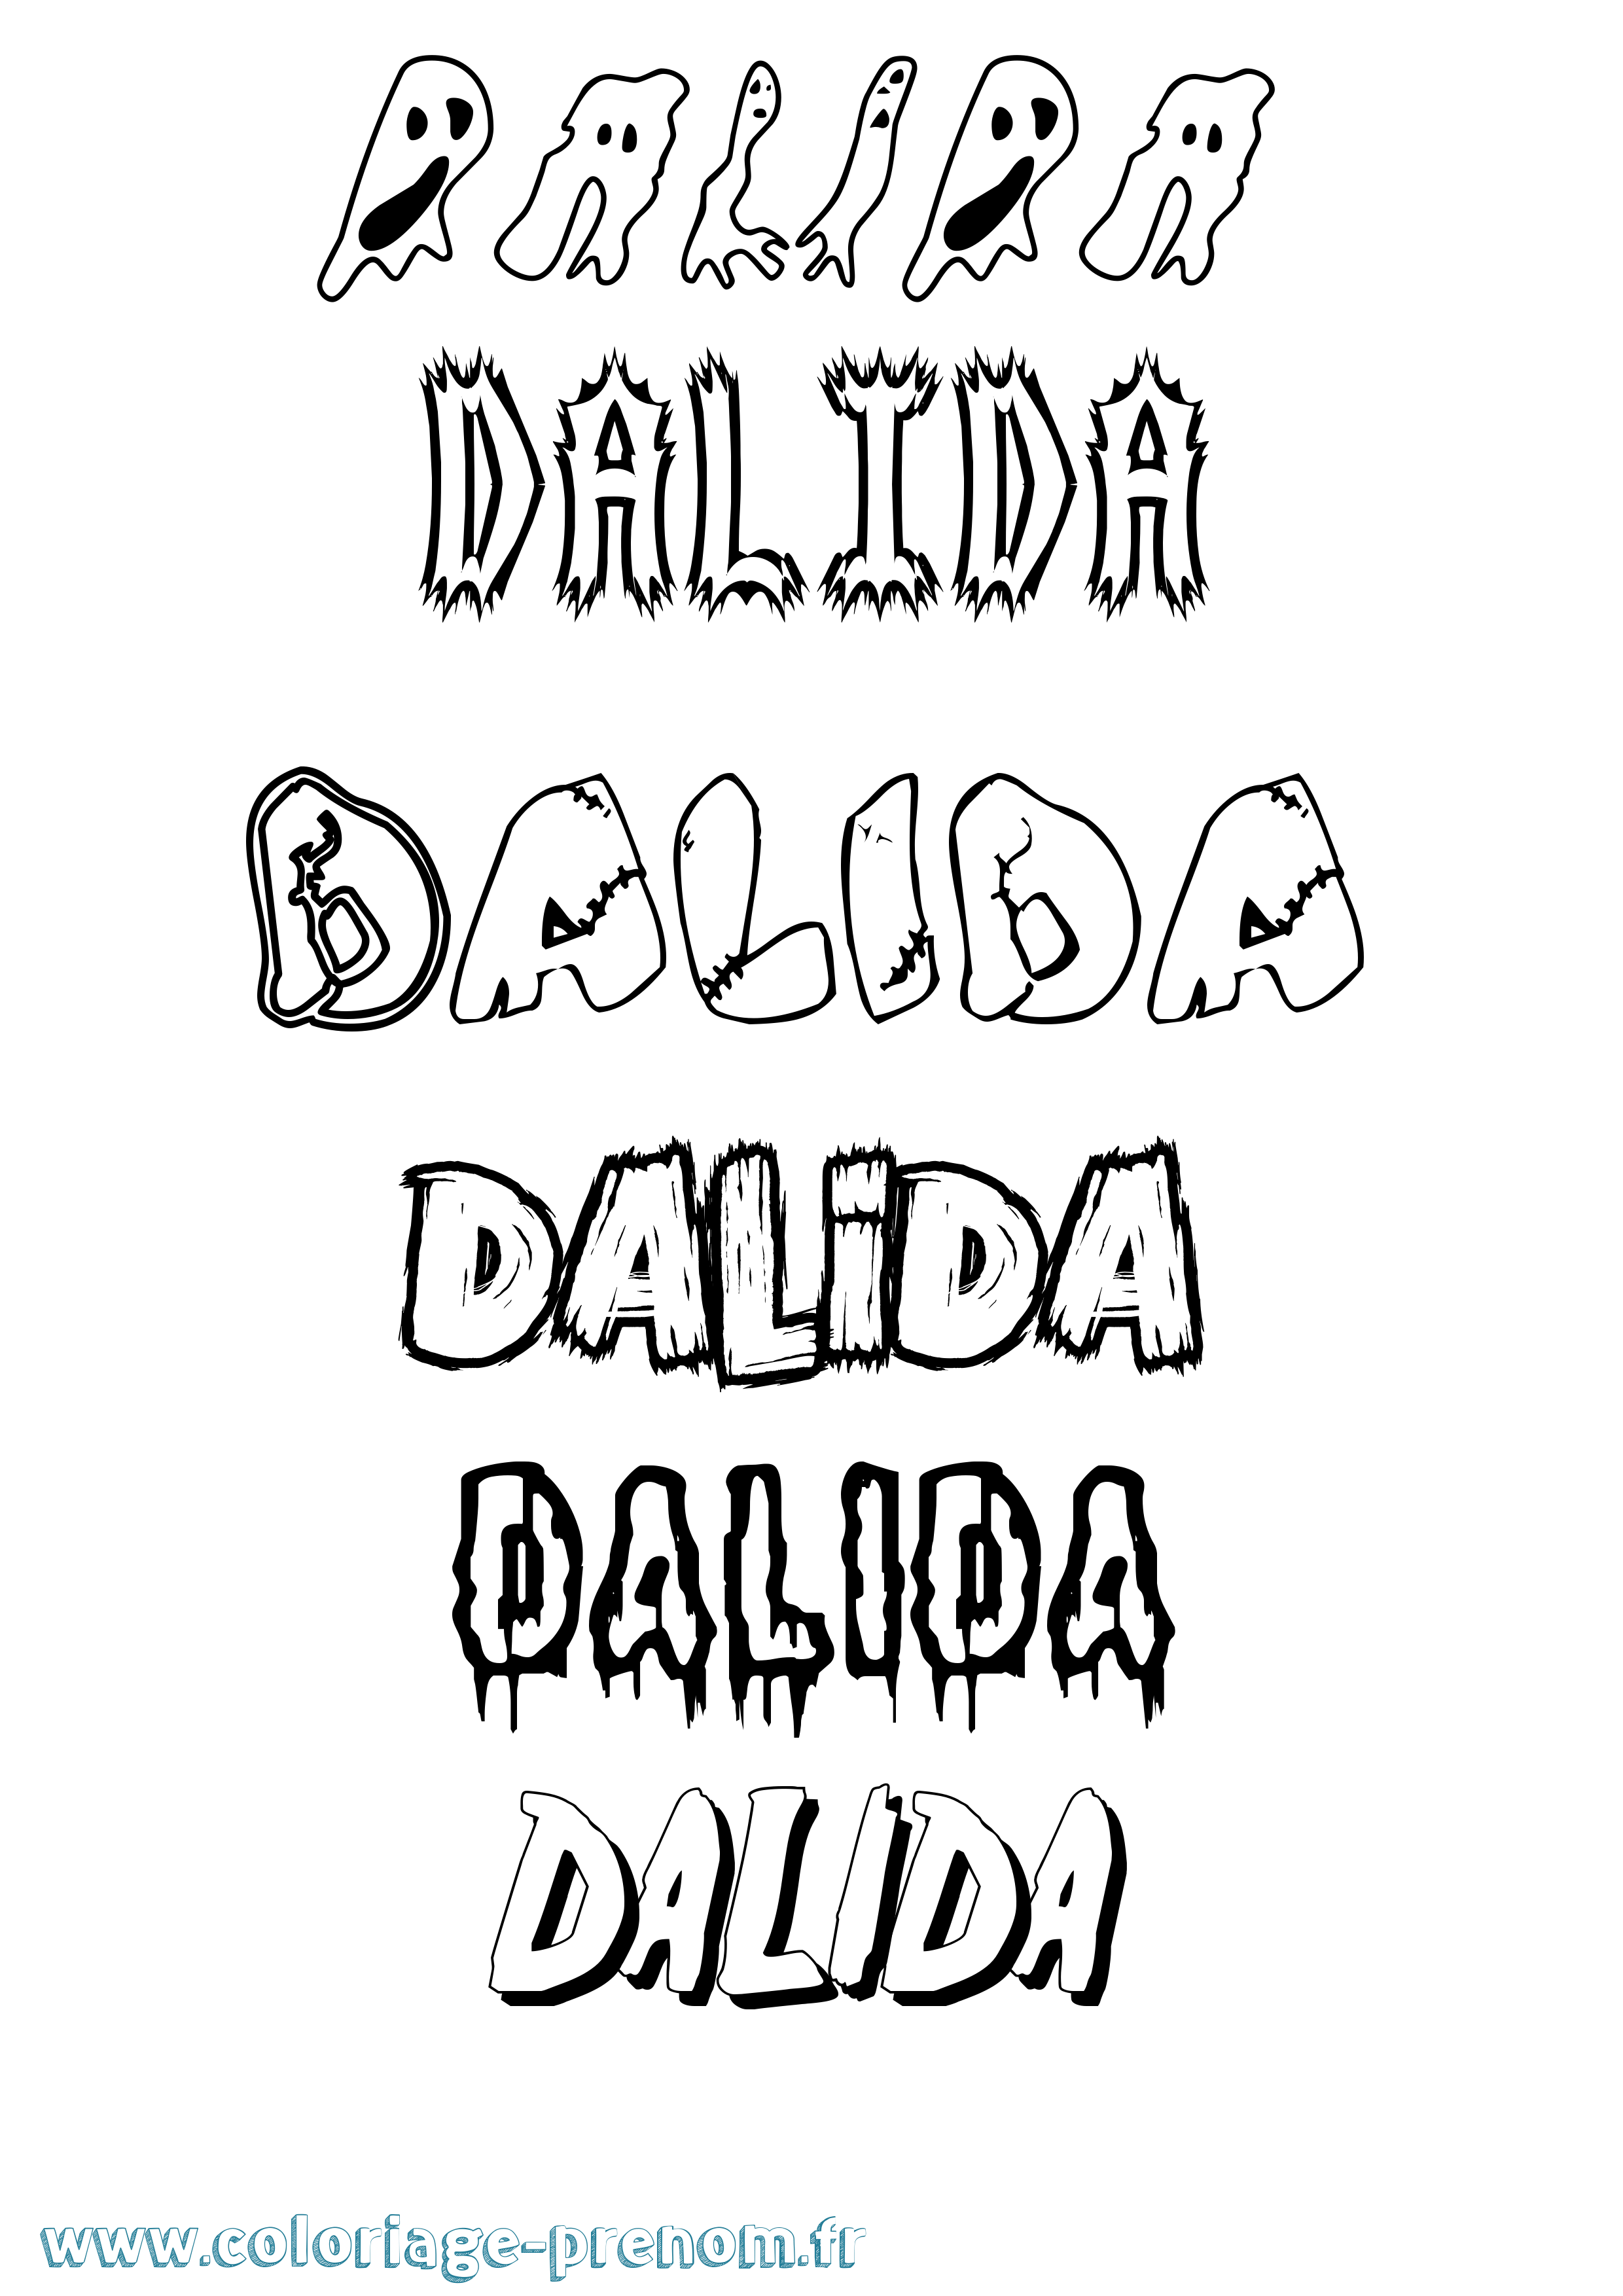 Coloriage prénom Dalida Frisson